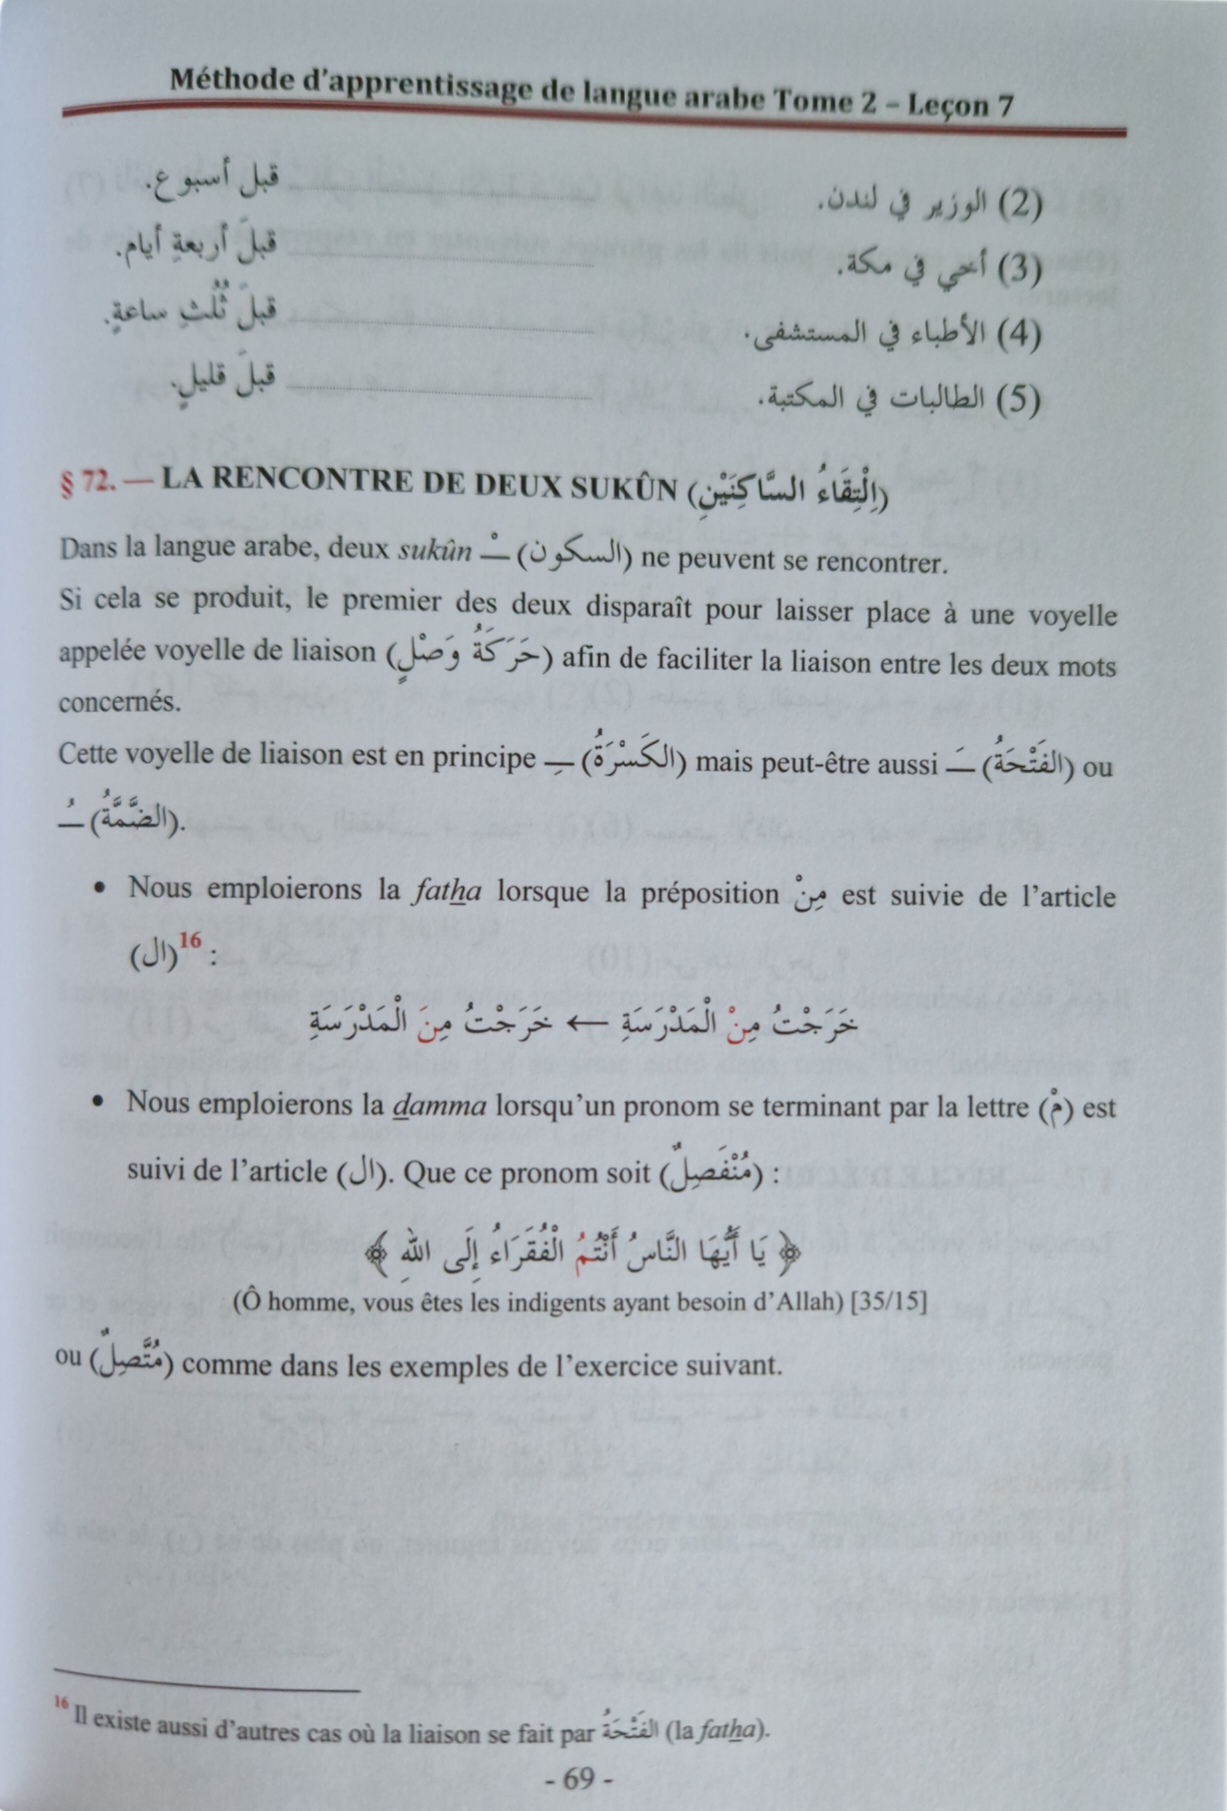 Méthode d'apprentissage de la langue arabe, Méthode de Médine Tome 2